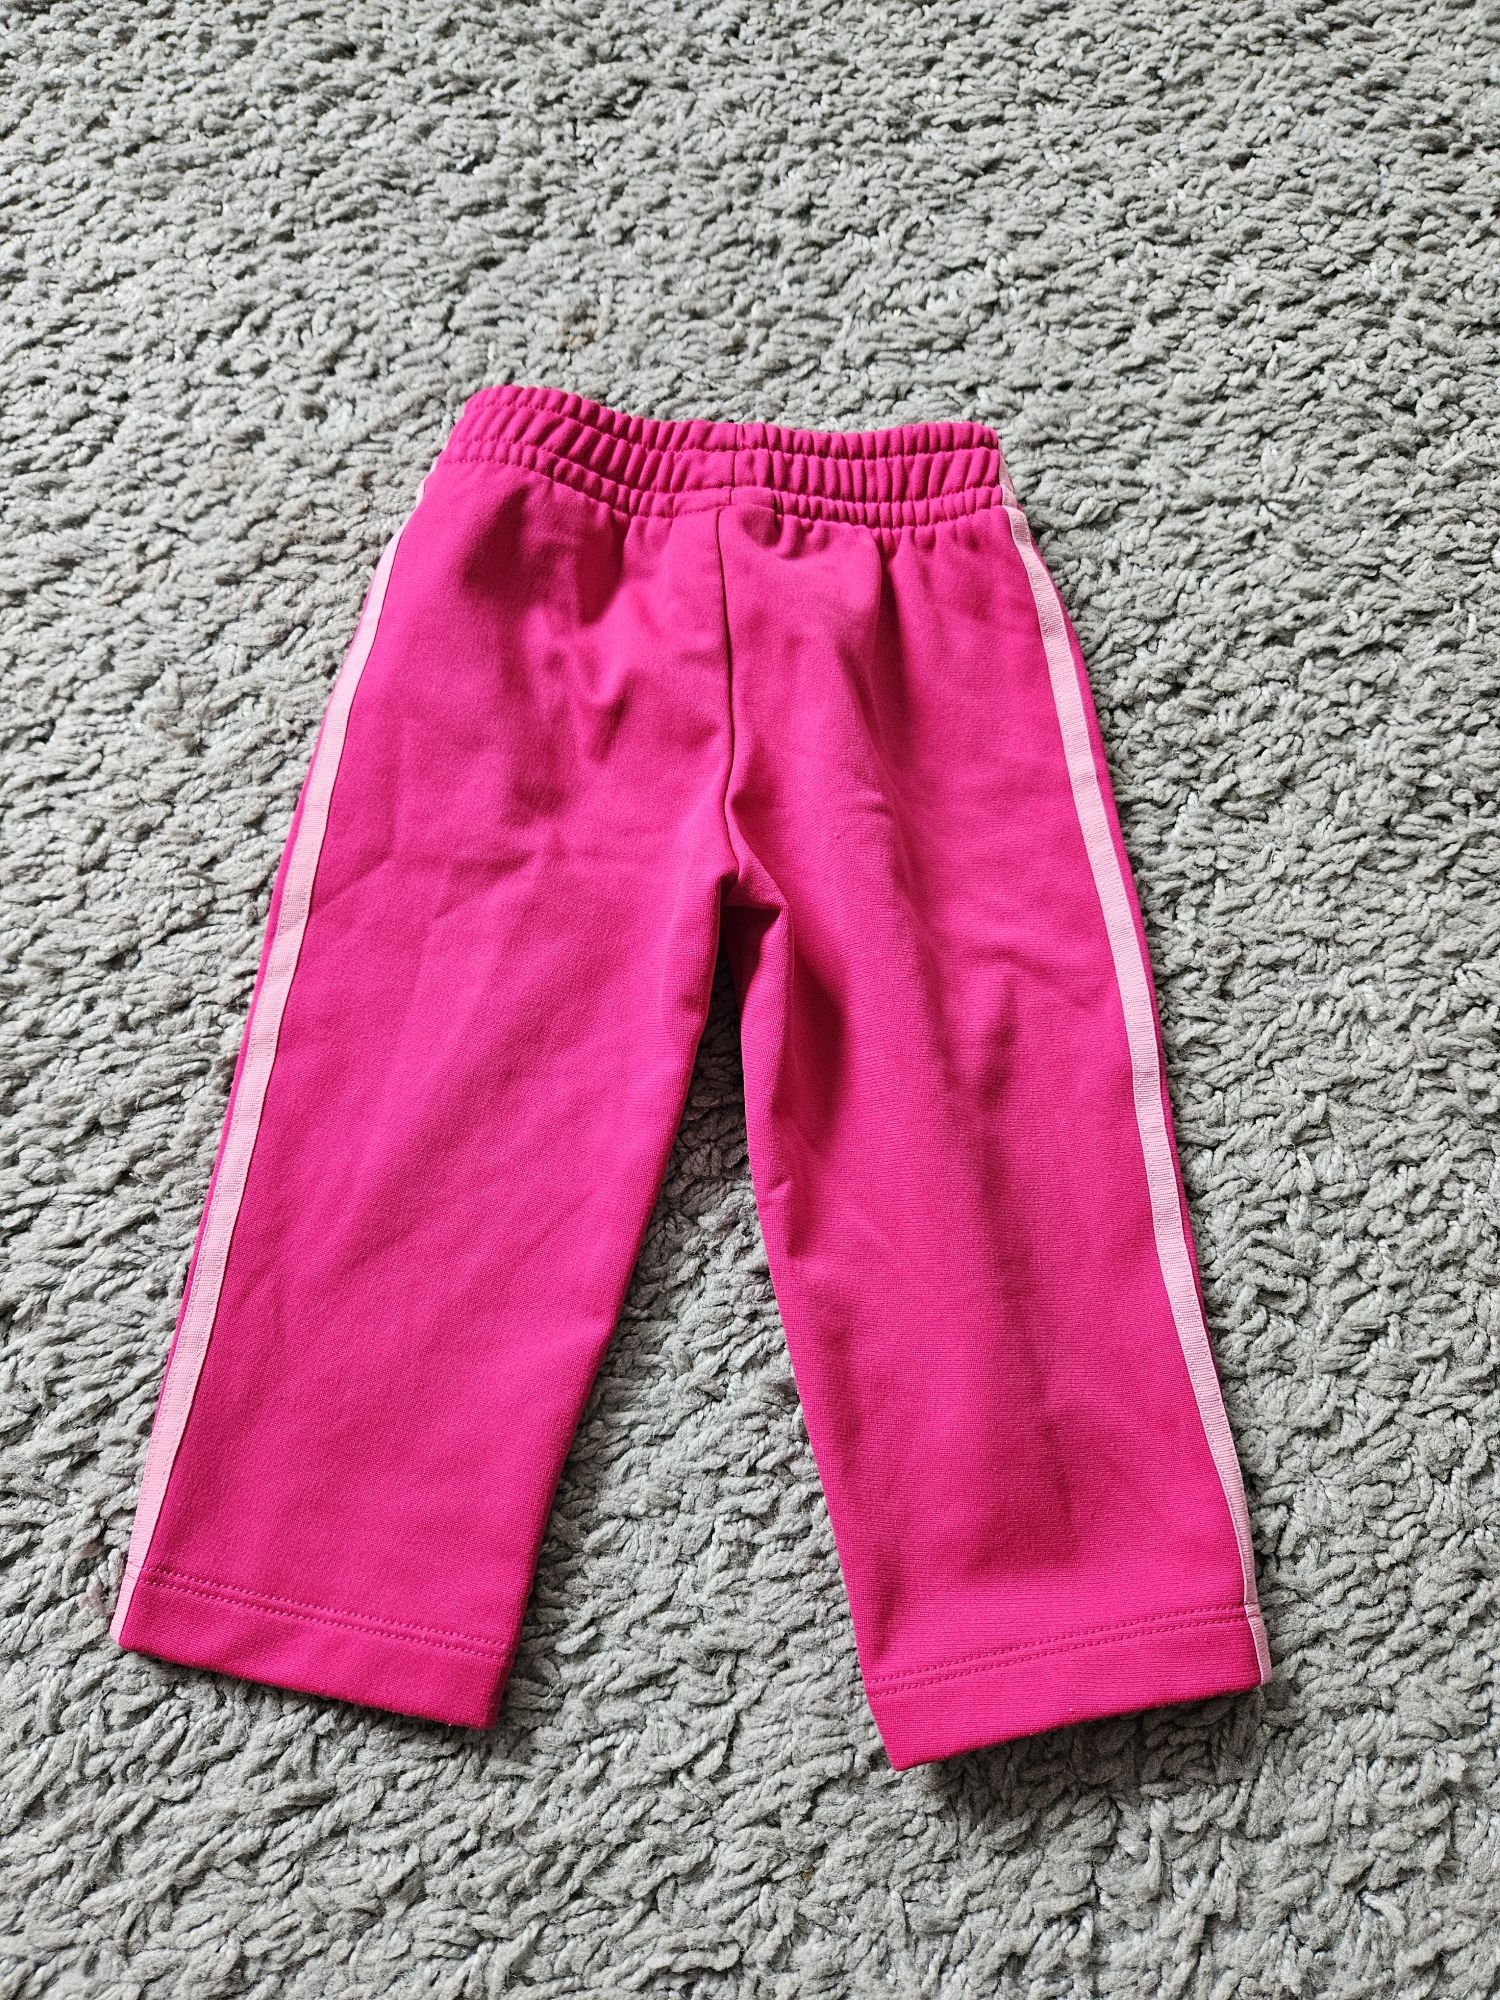 Adidas spodnie dresowe dla dziewczynki 80